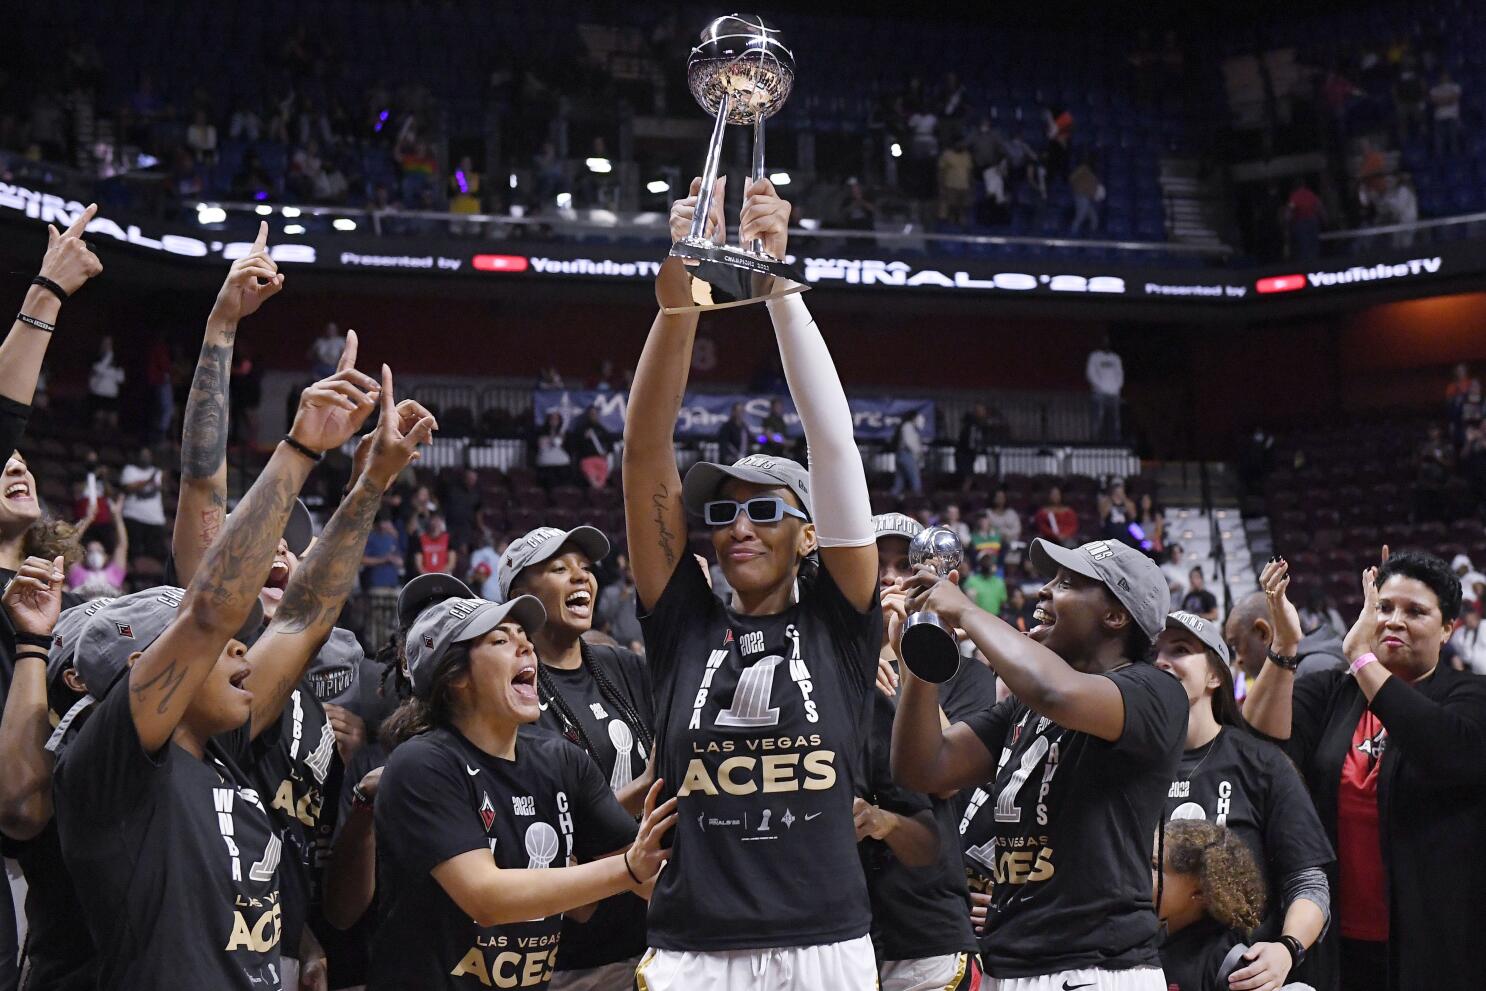 Men's Las Vegas Aces New Era Gray 2022 WNBA Finals Champions